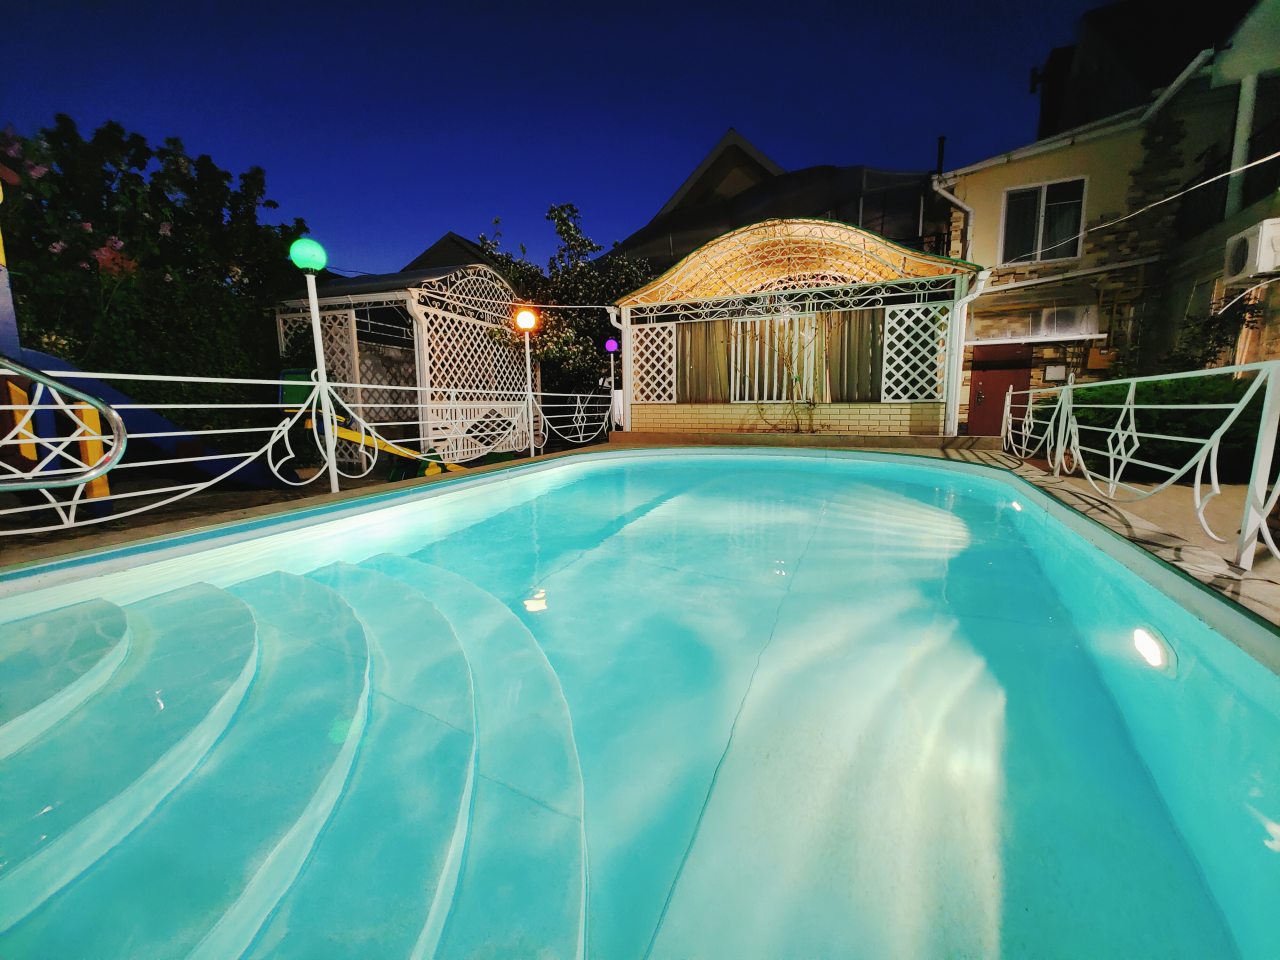 Гостевые дома в Анапе с бассейном , доступные цены на варианты отдыха в Анапе с бассейном